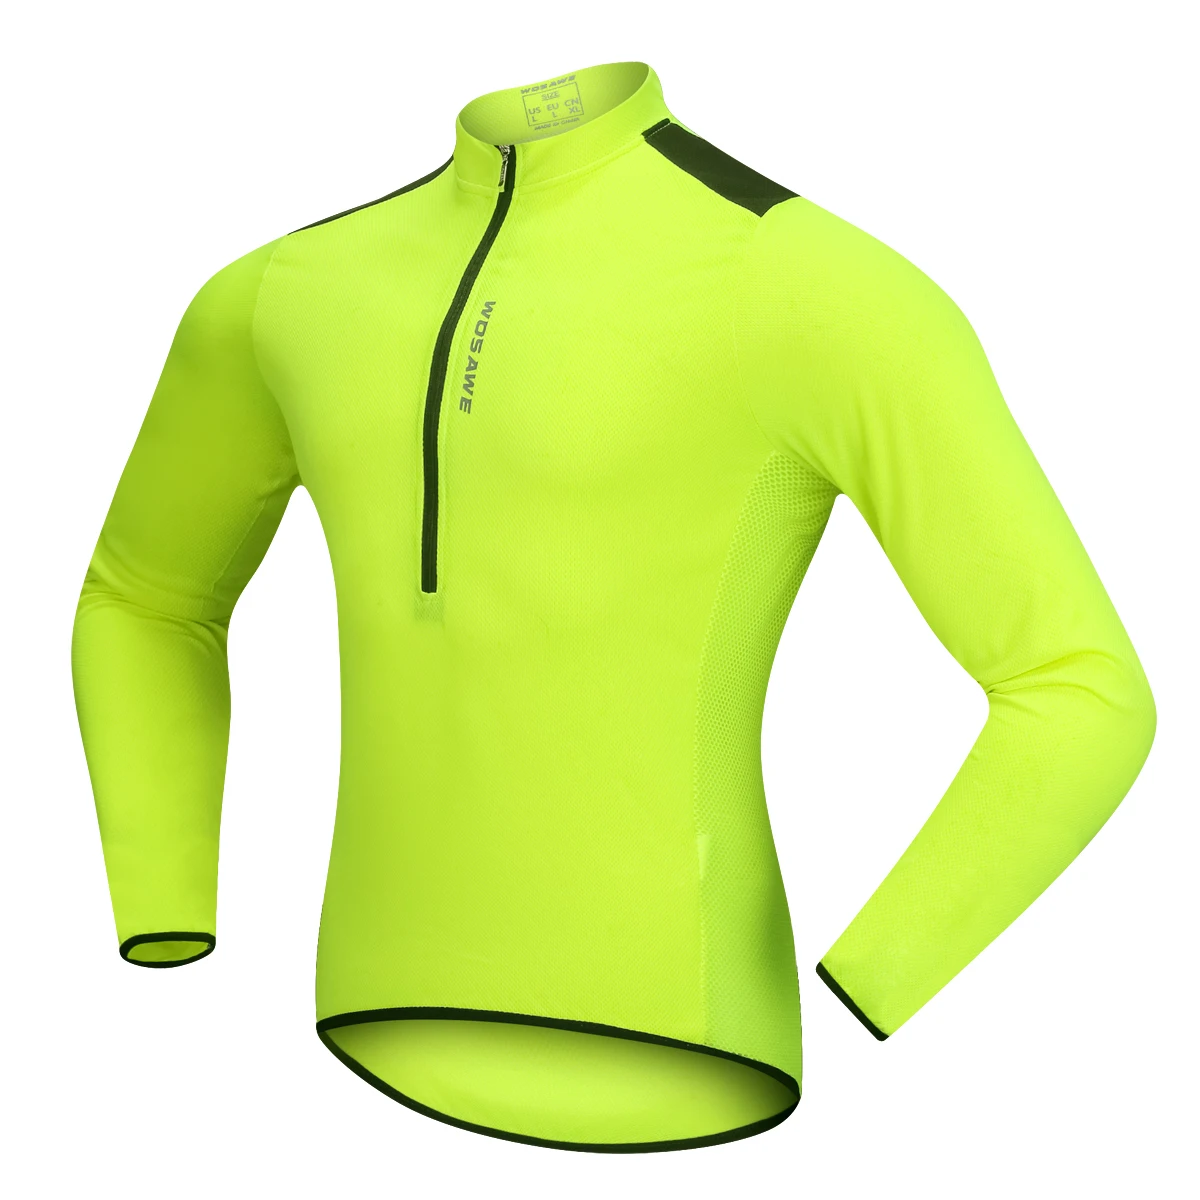 WOSAWE весна лето мужские комплекты одежды для велоспорта 4 цвета пуловер Толстовка гель Светоотражающие Джерси брюки костюм велосипед одежда - Цвет: BL202G